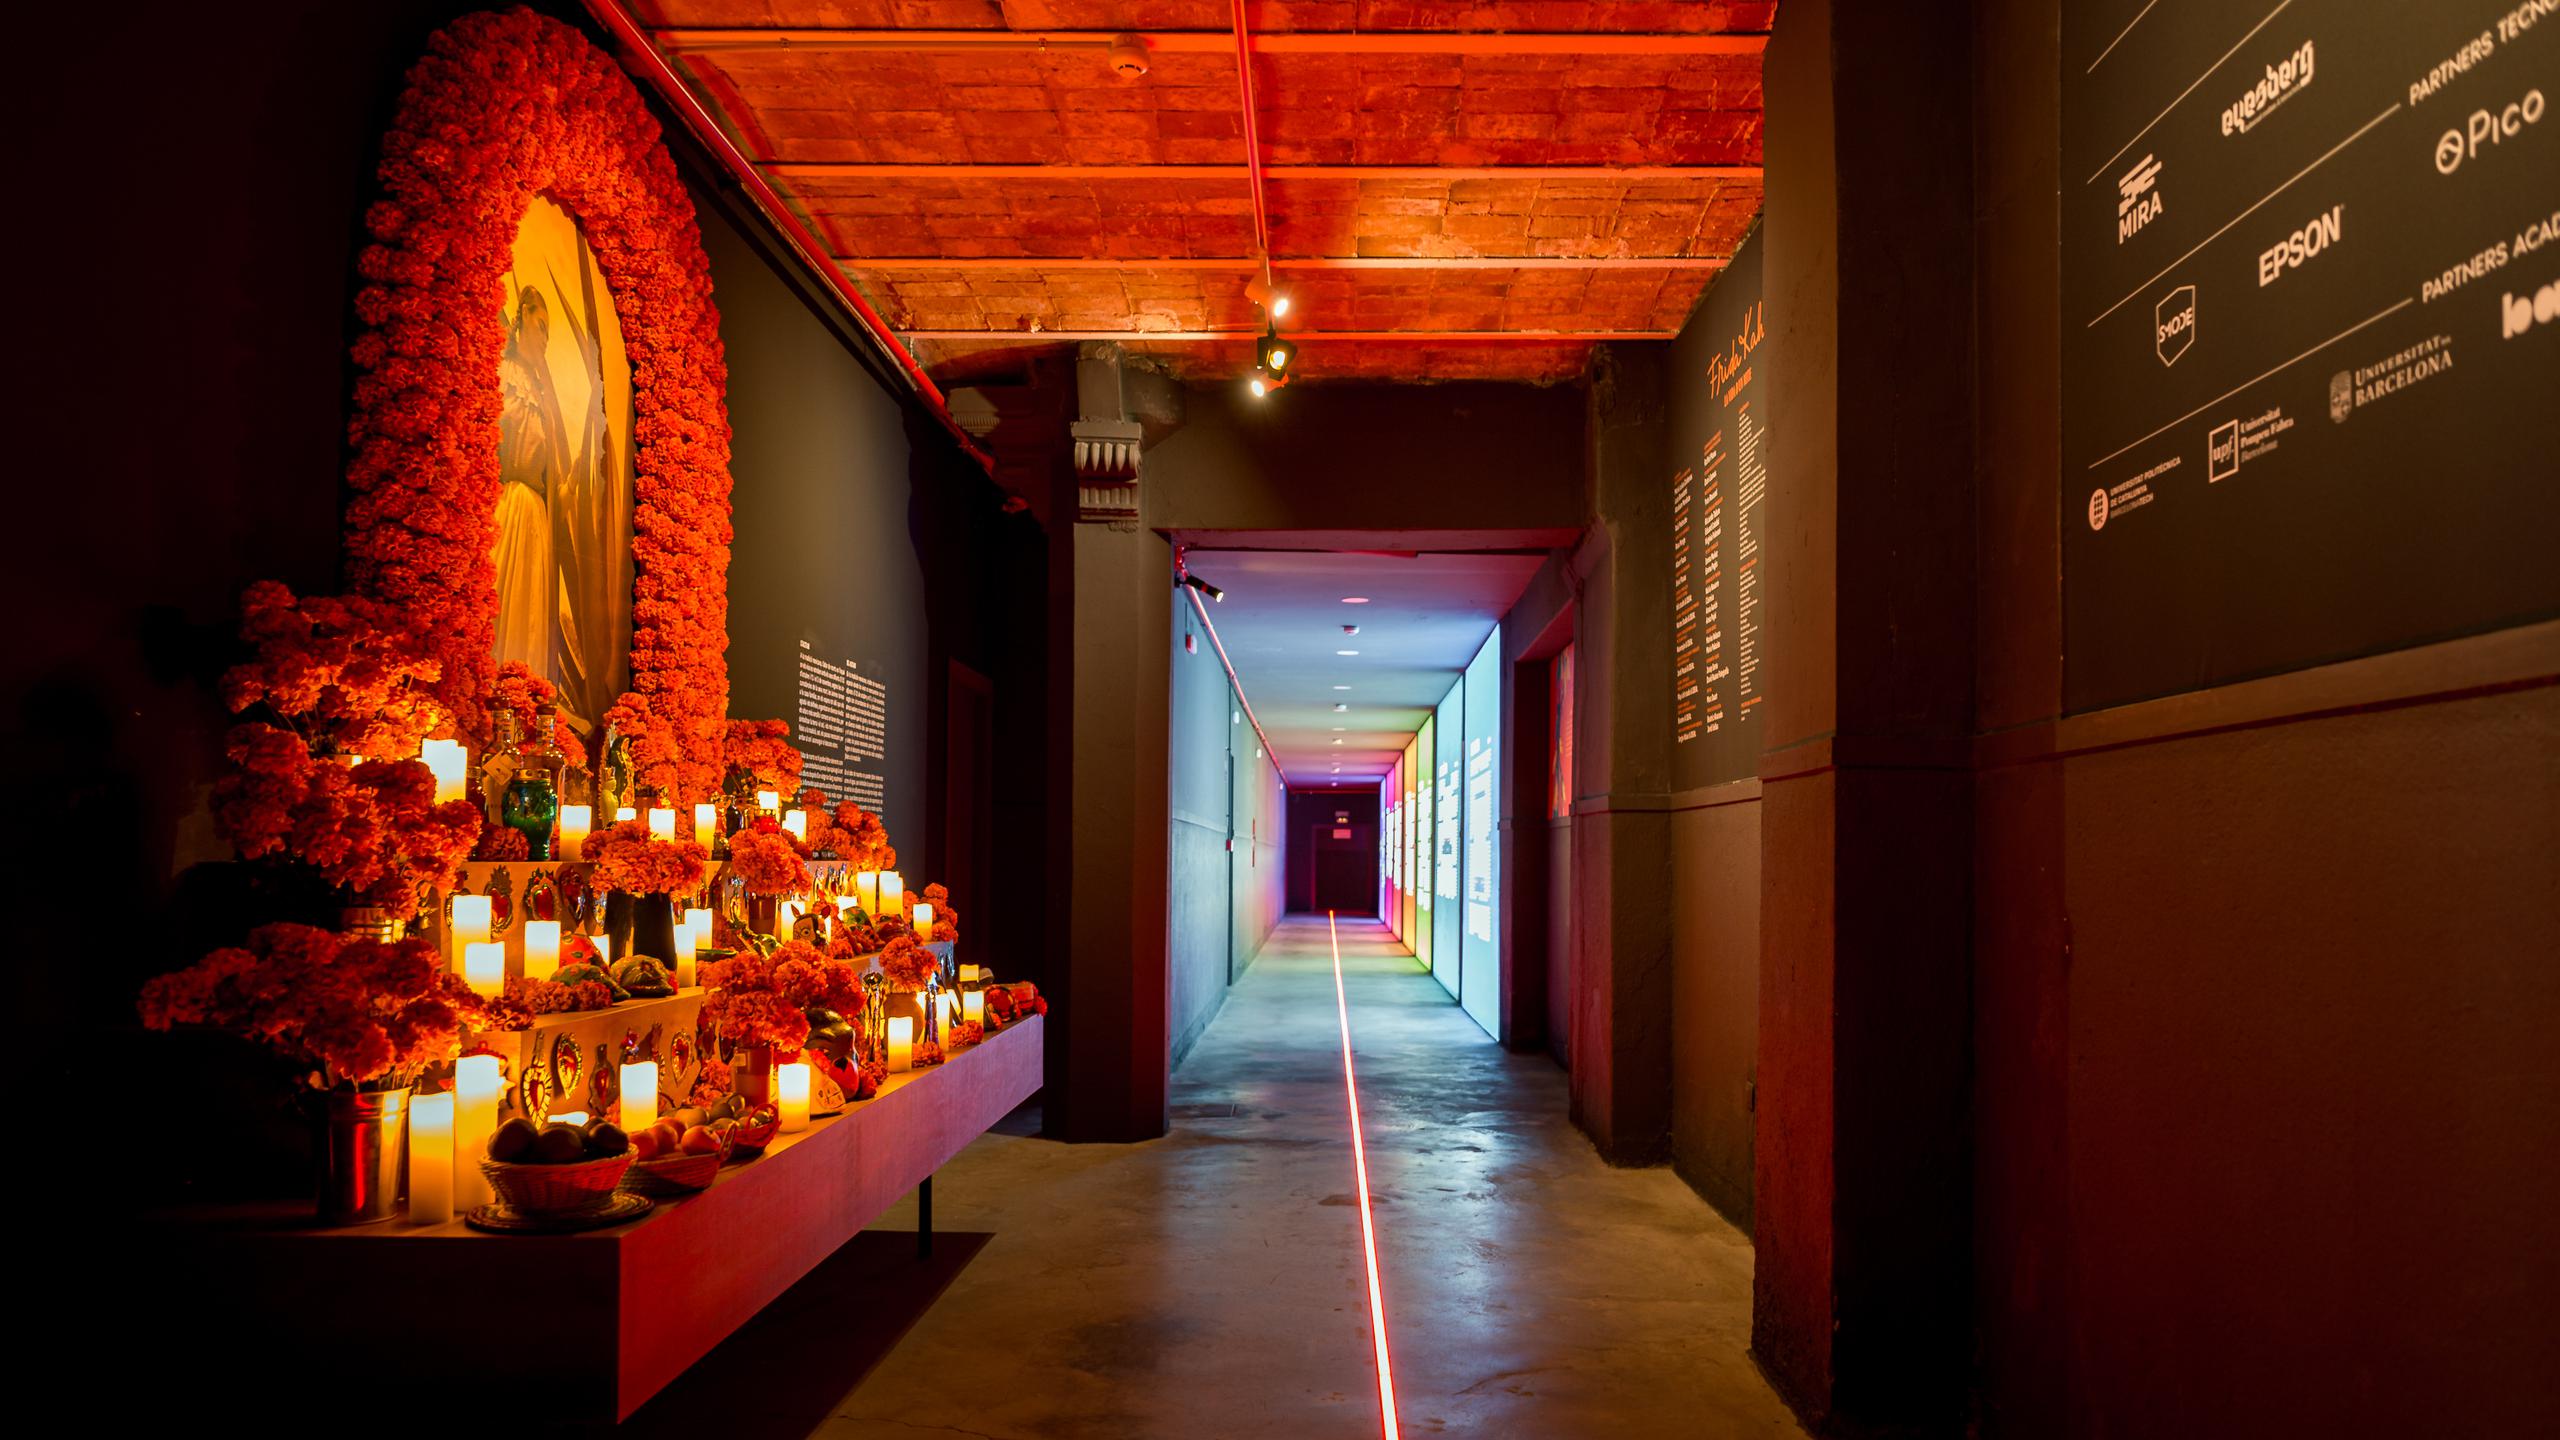 La exposición es un recorrido audovisual sobre la vida y obra de la legendaria artista mexicana.